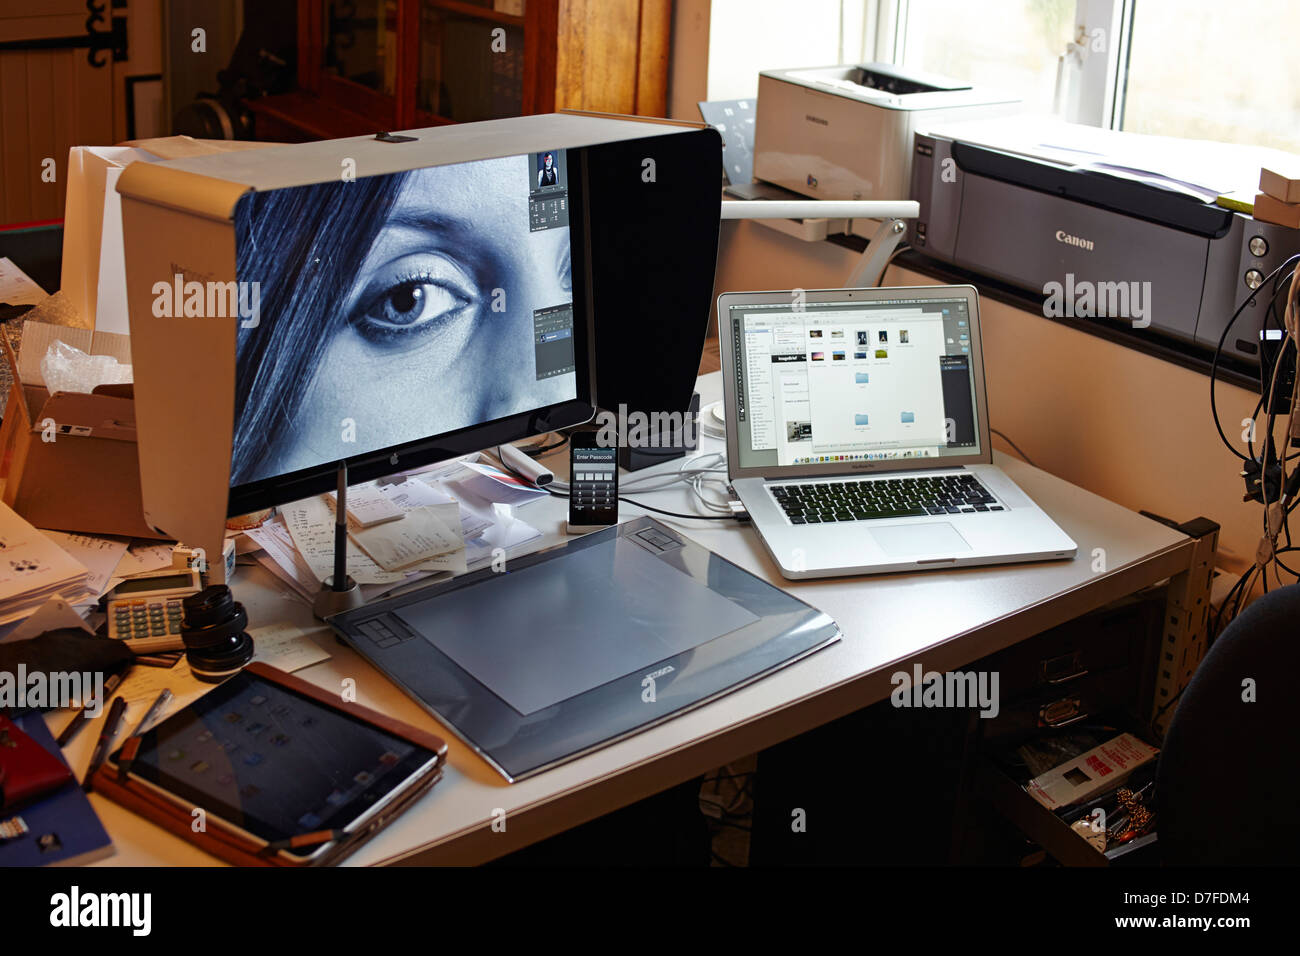 Die Workstation der Fotografen mit dem MacBook-Pro, dem Großbildschirm, dem  iPad und den Druckern Stockfotografie - Alamy